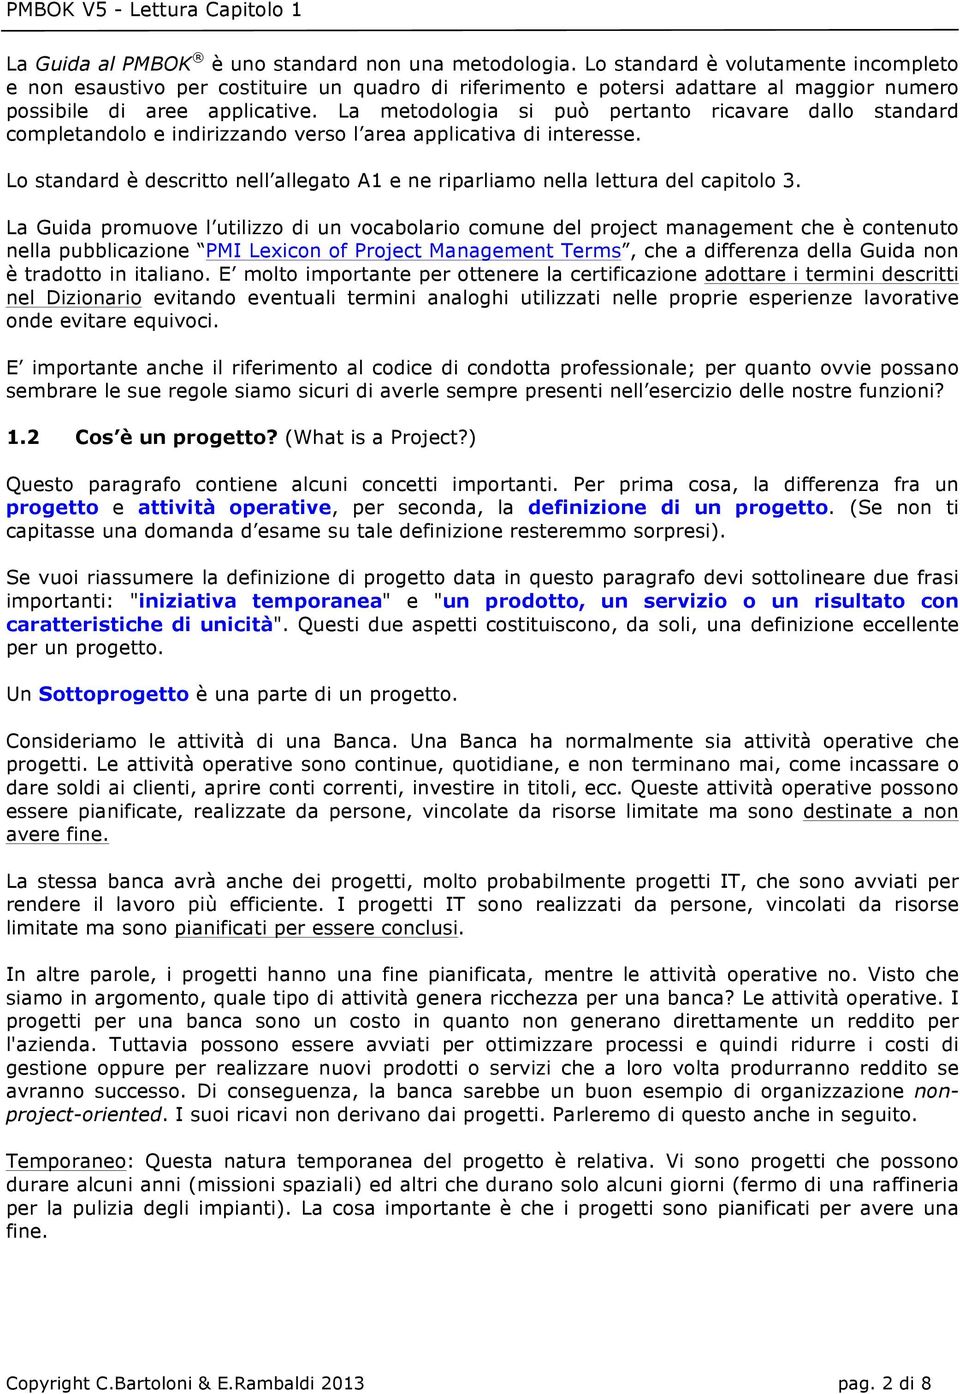 La Guida prmuve l utilizz di un vcablari cmune del prject management che è cntenut nella pubblicazine PMI Lexicn f Prject Management Terms, che a differenza della Guida nn è tradtt in italian.